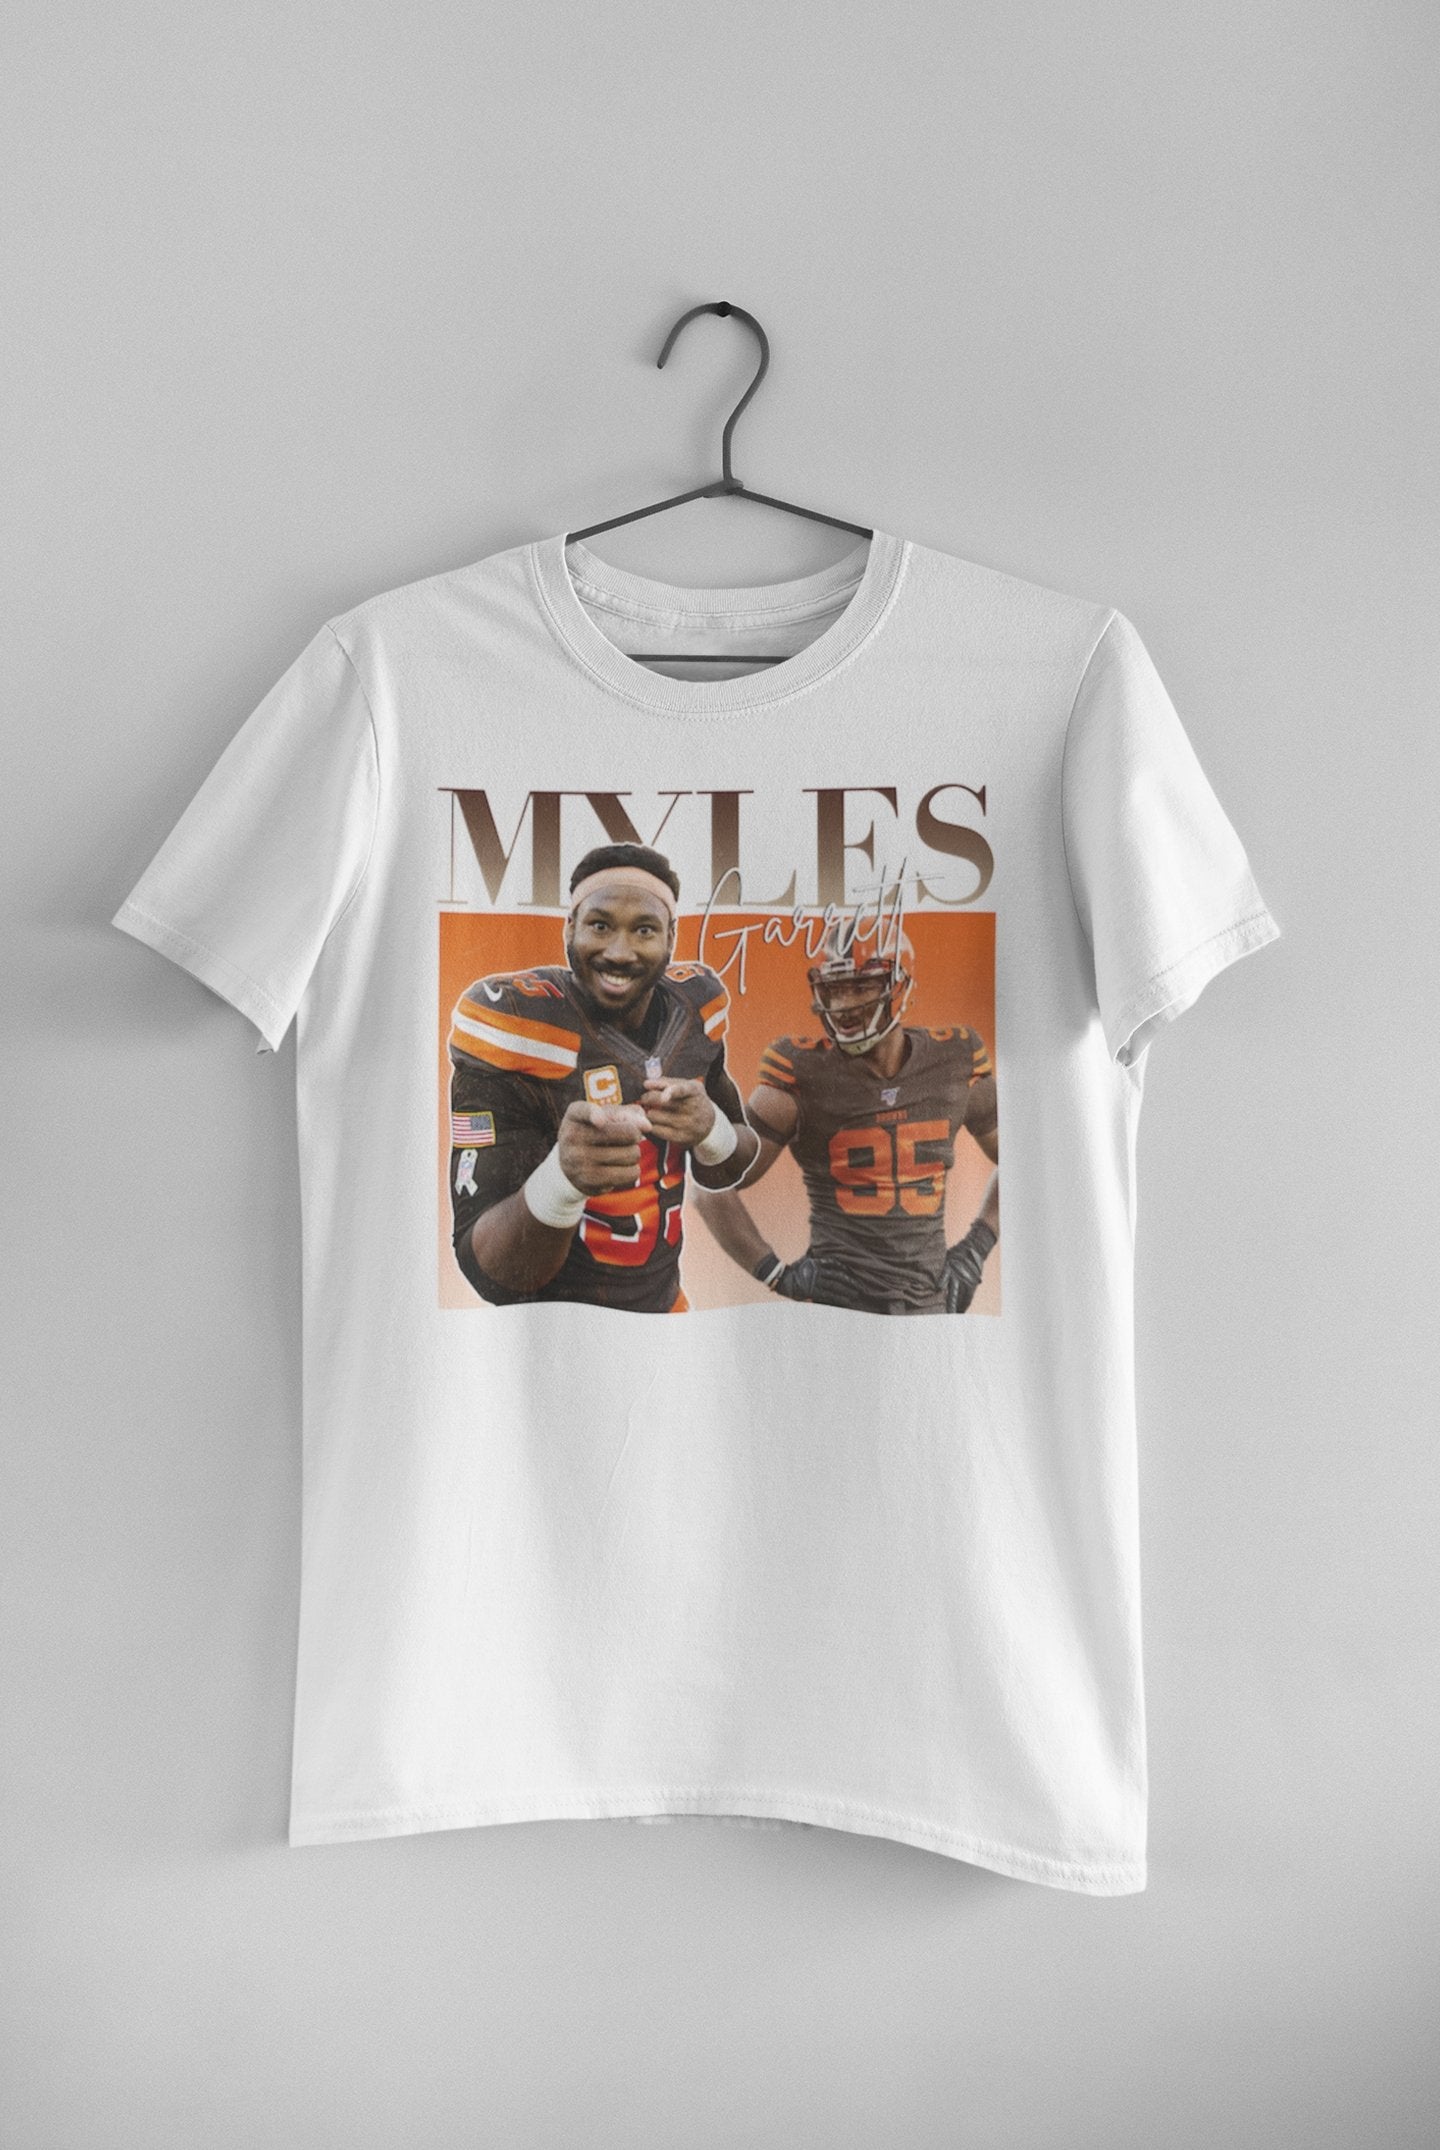 Myles Garrett - Unisex t-shirt - Modern Vintage Apparel